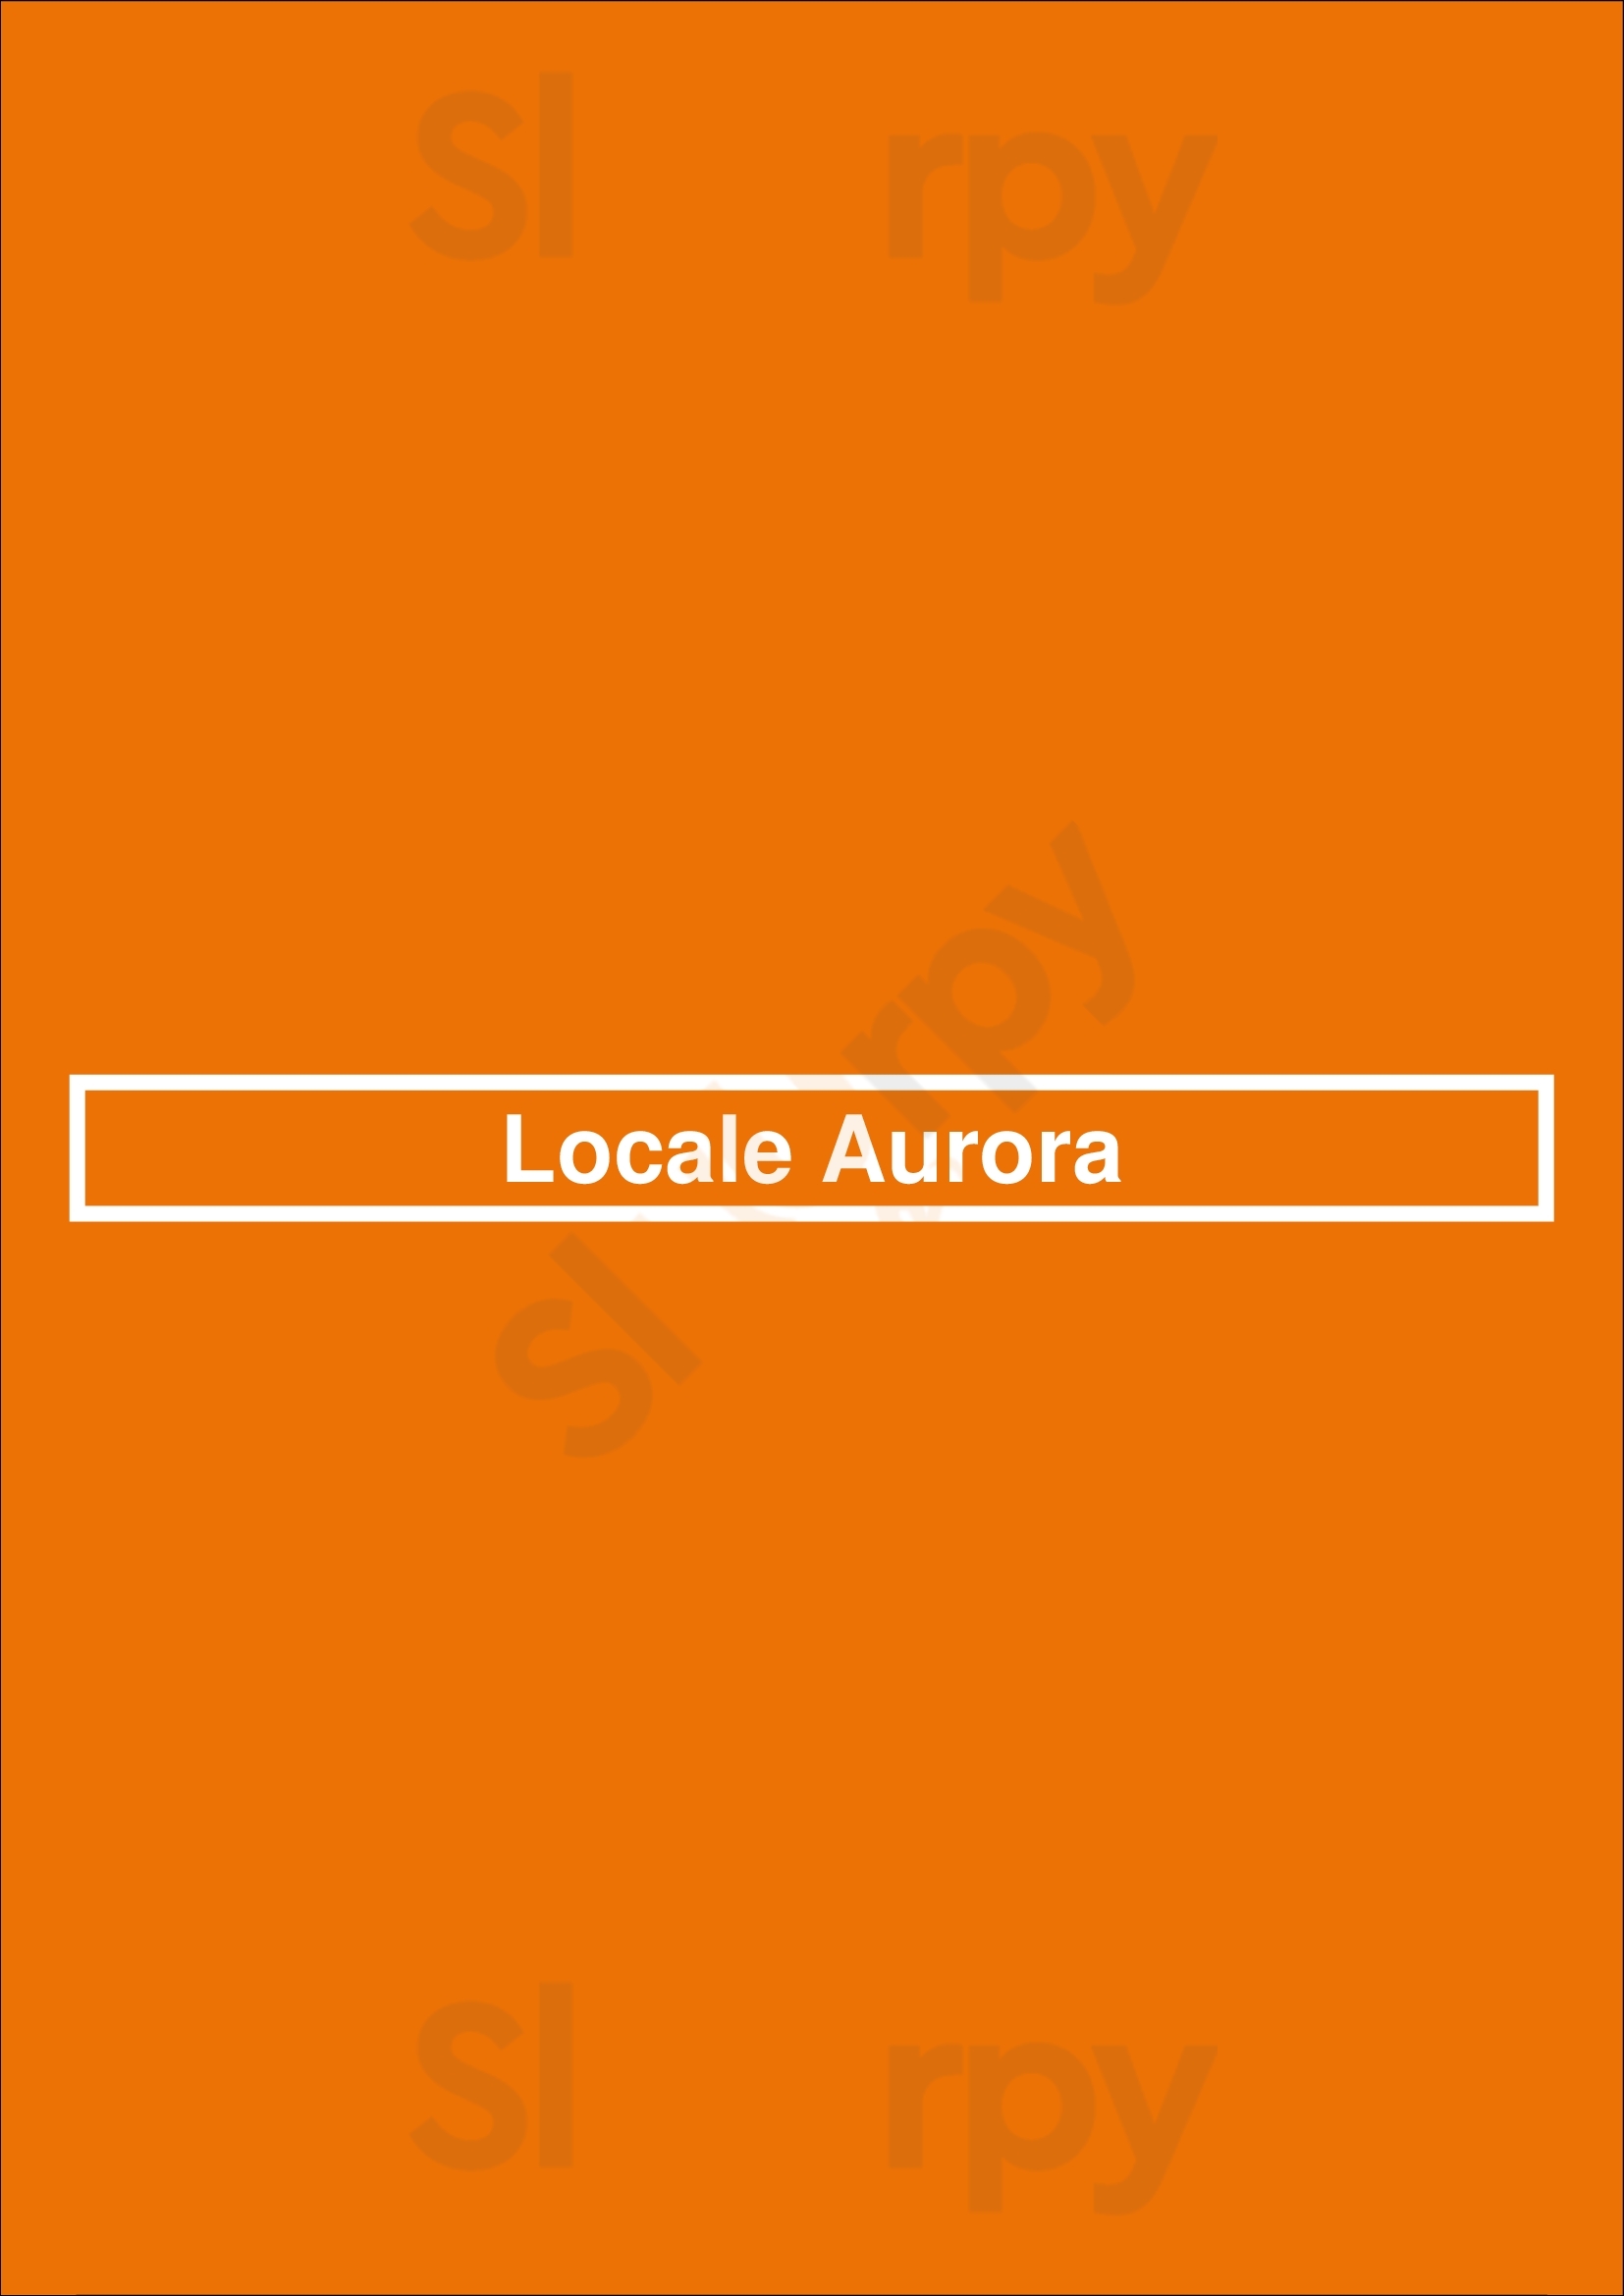 Locale Aurora Aurora Menu - 1